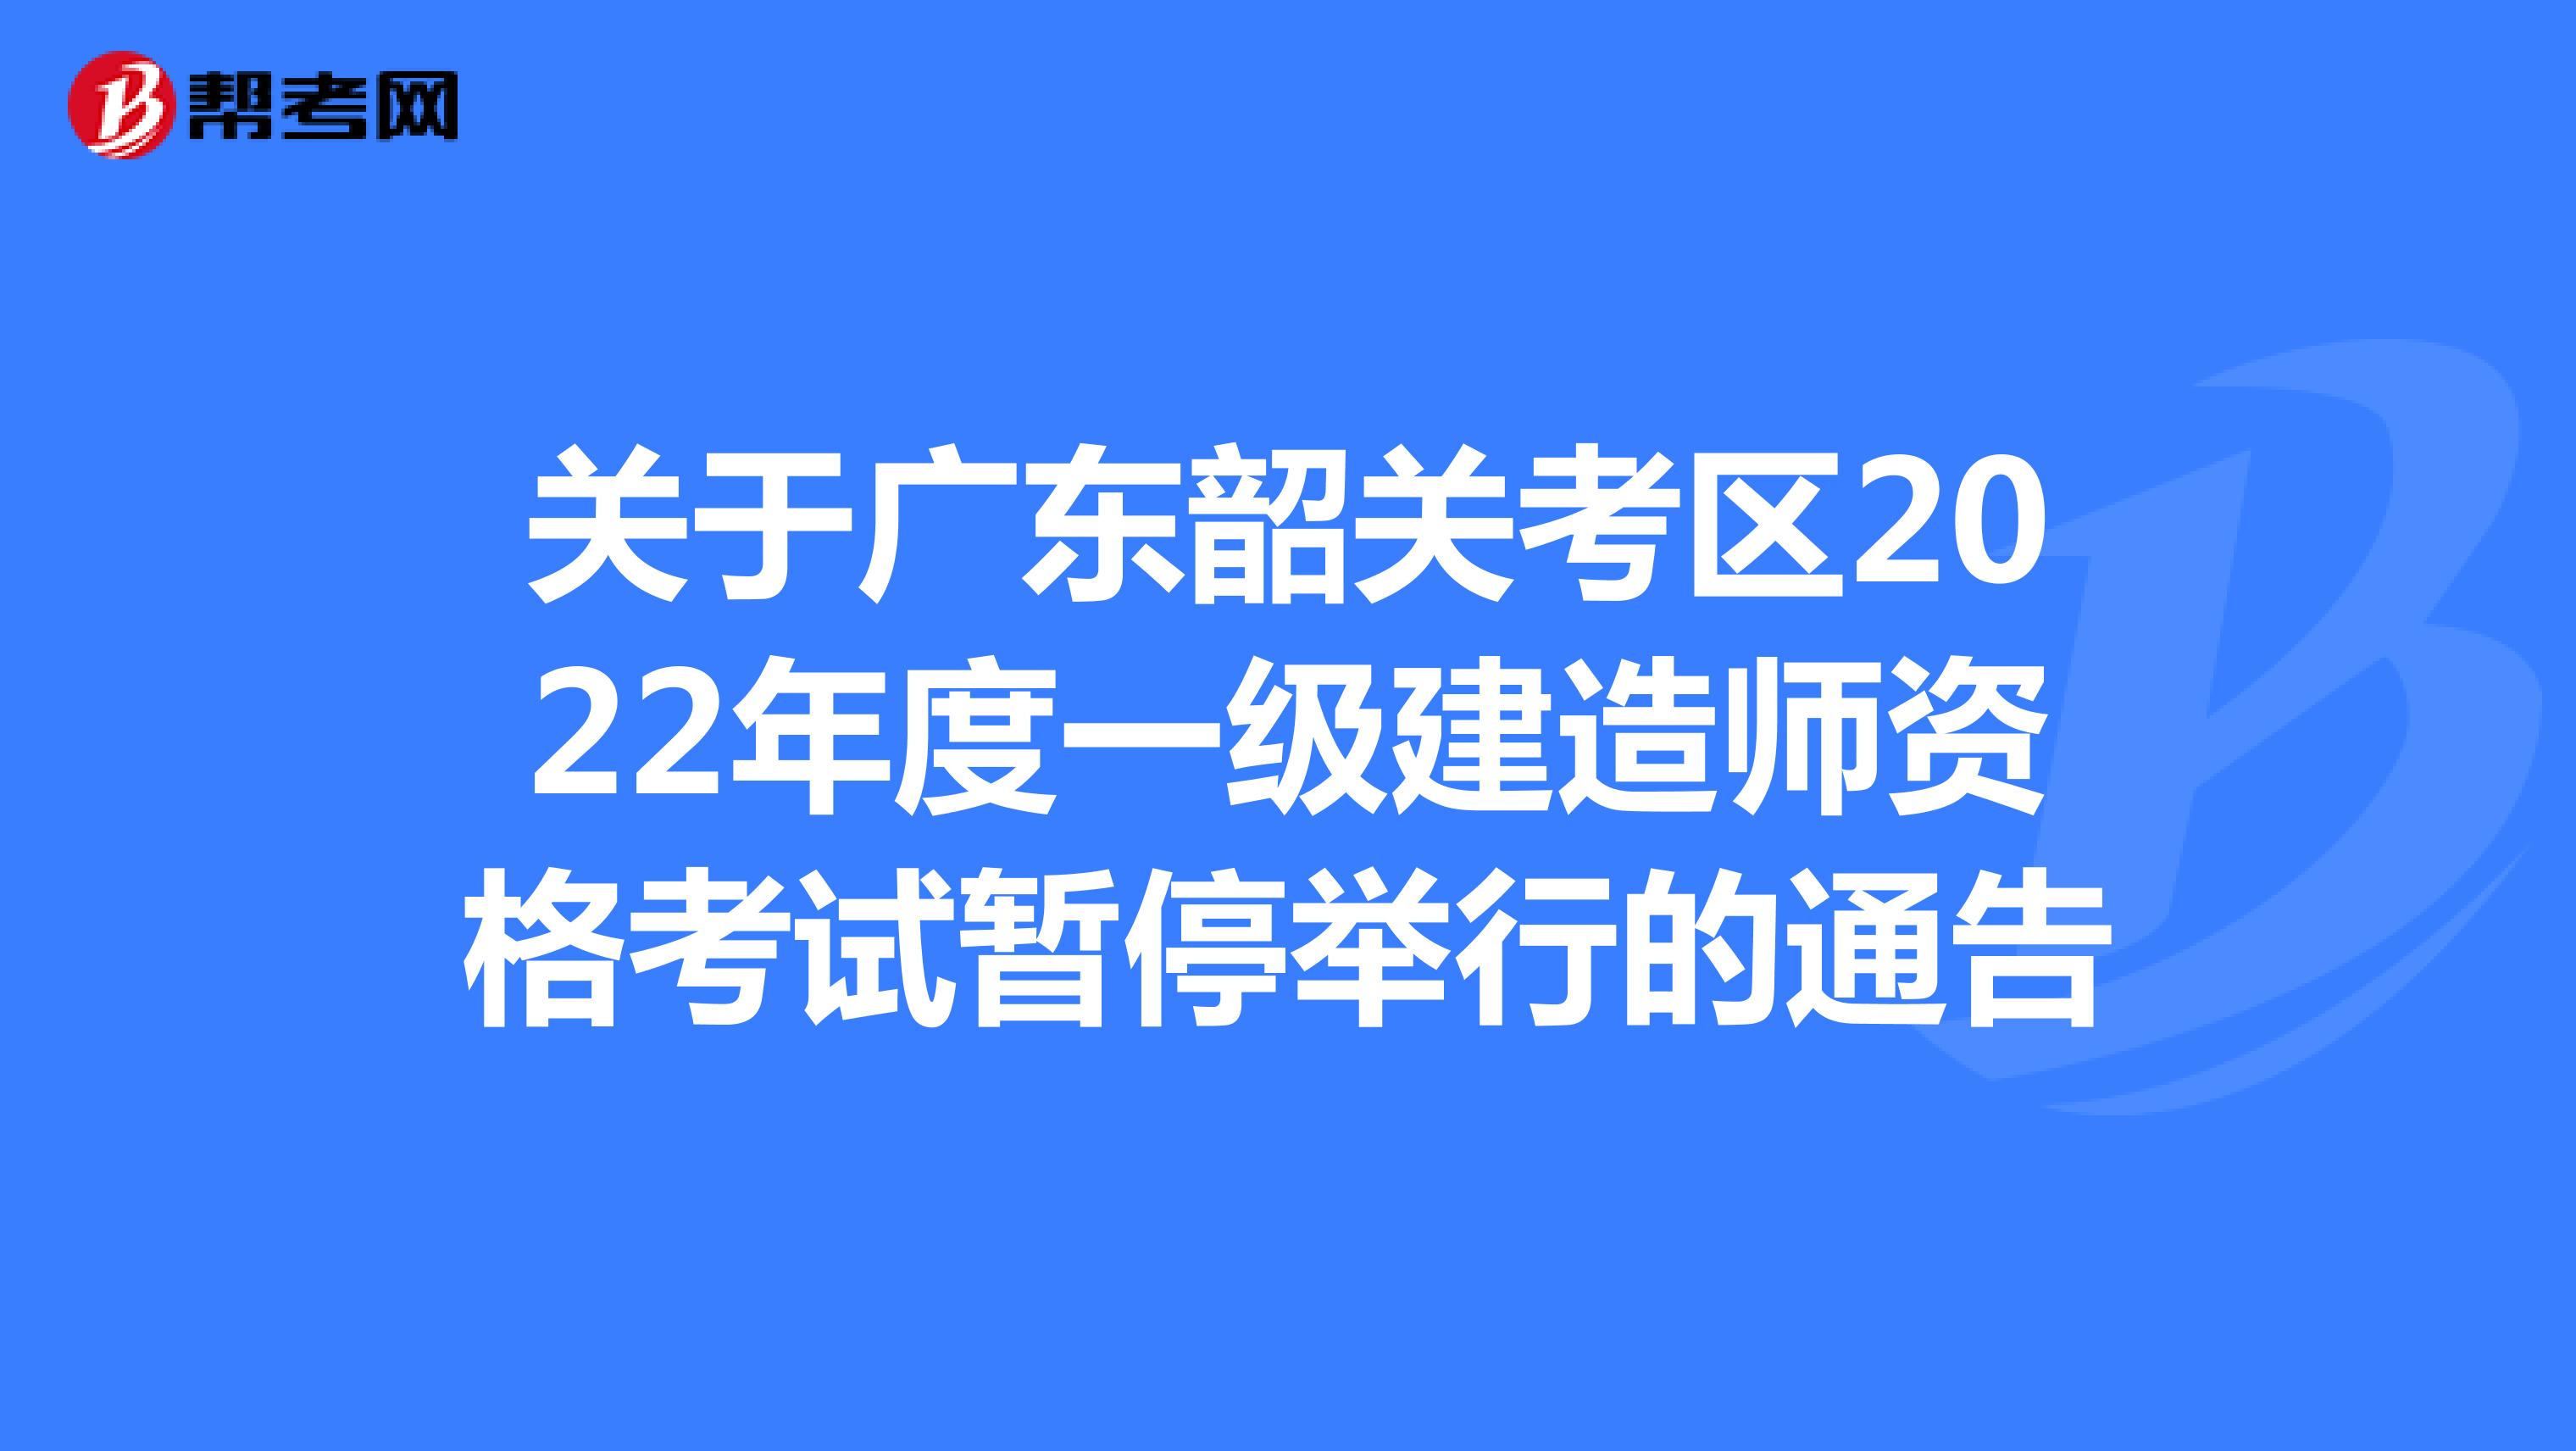 关于广东韶关考区2022年度一级建造师资格考试暂停举行的通告